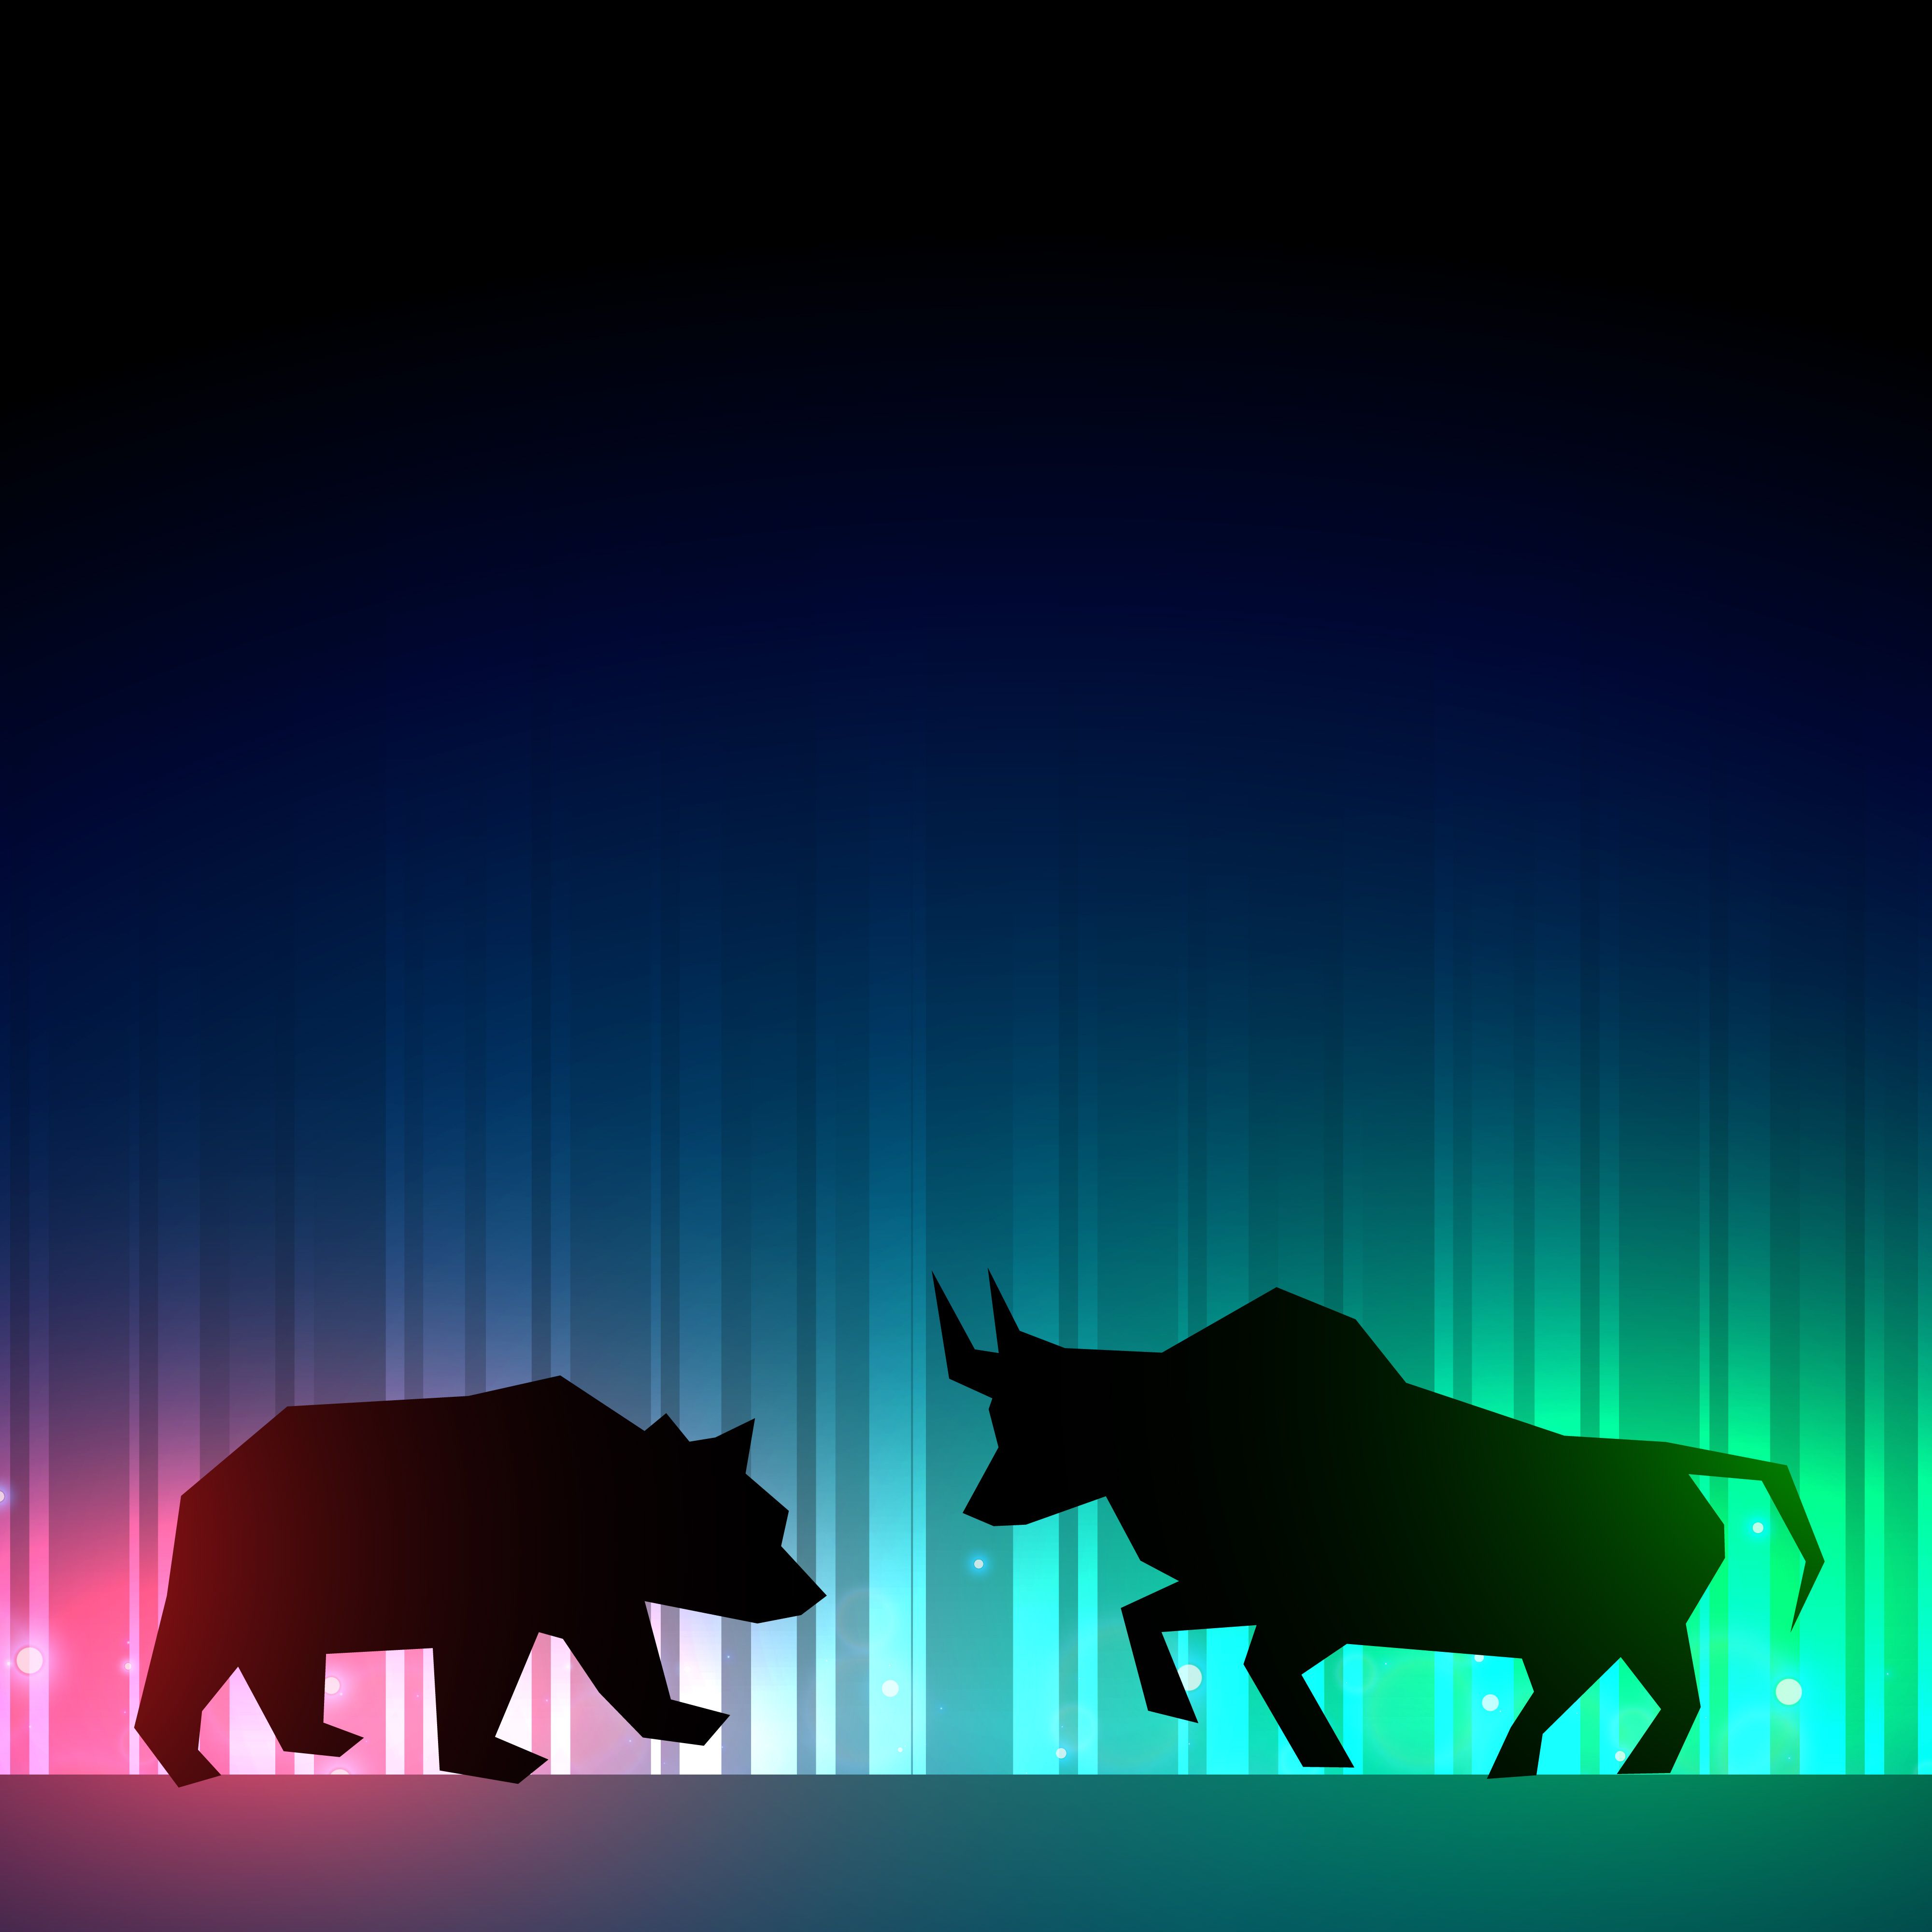 bulls forex bear bull market wallpaper animal bearish wall street - 看線圖輕鬆賺外匯